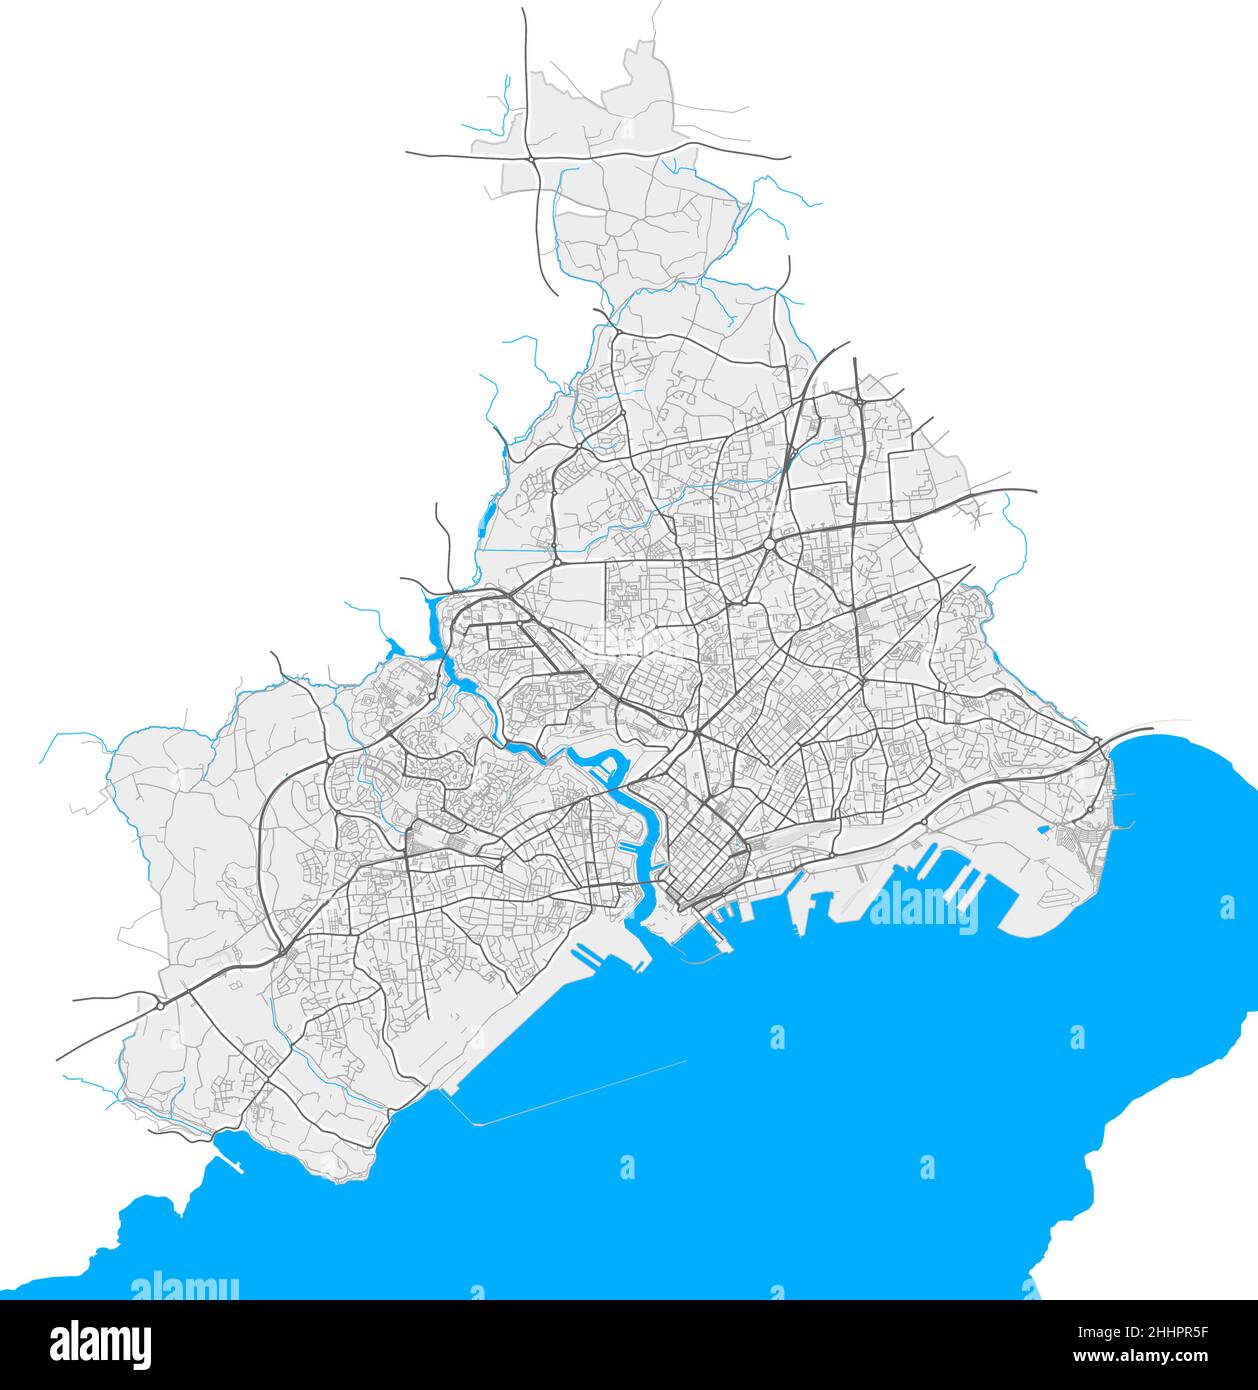 Brest, Finisterre, Francia mapa vectorial de alta resolución con límites de la ciudad y caminos editables. Contornos blancos de las carreteras principales. Muchos caminos detallados. Azul Ilustración del Vector